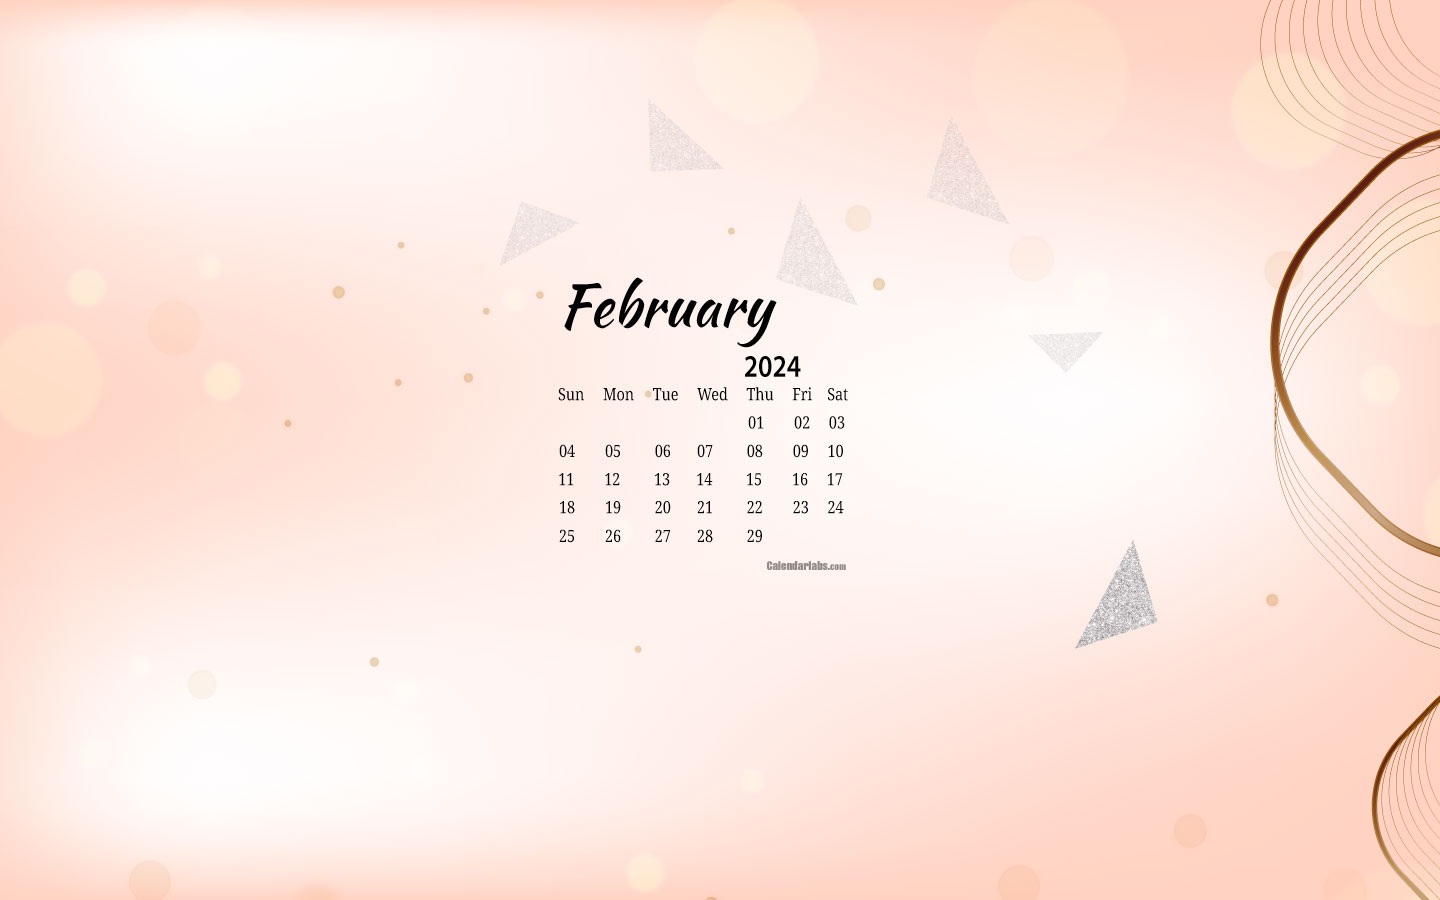 February 2024 Desktop Wallpaper Calendar - Calendarlabs | Template Calendar Labs 2024